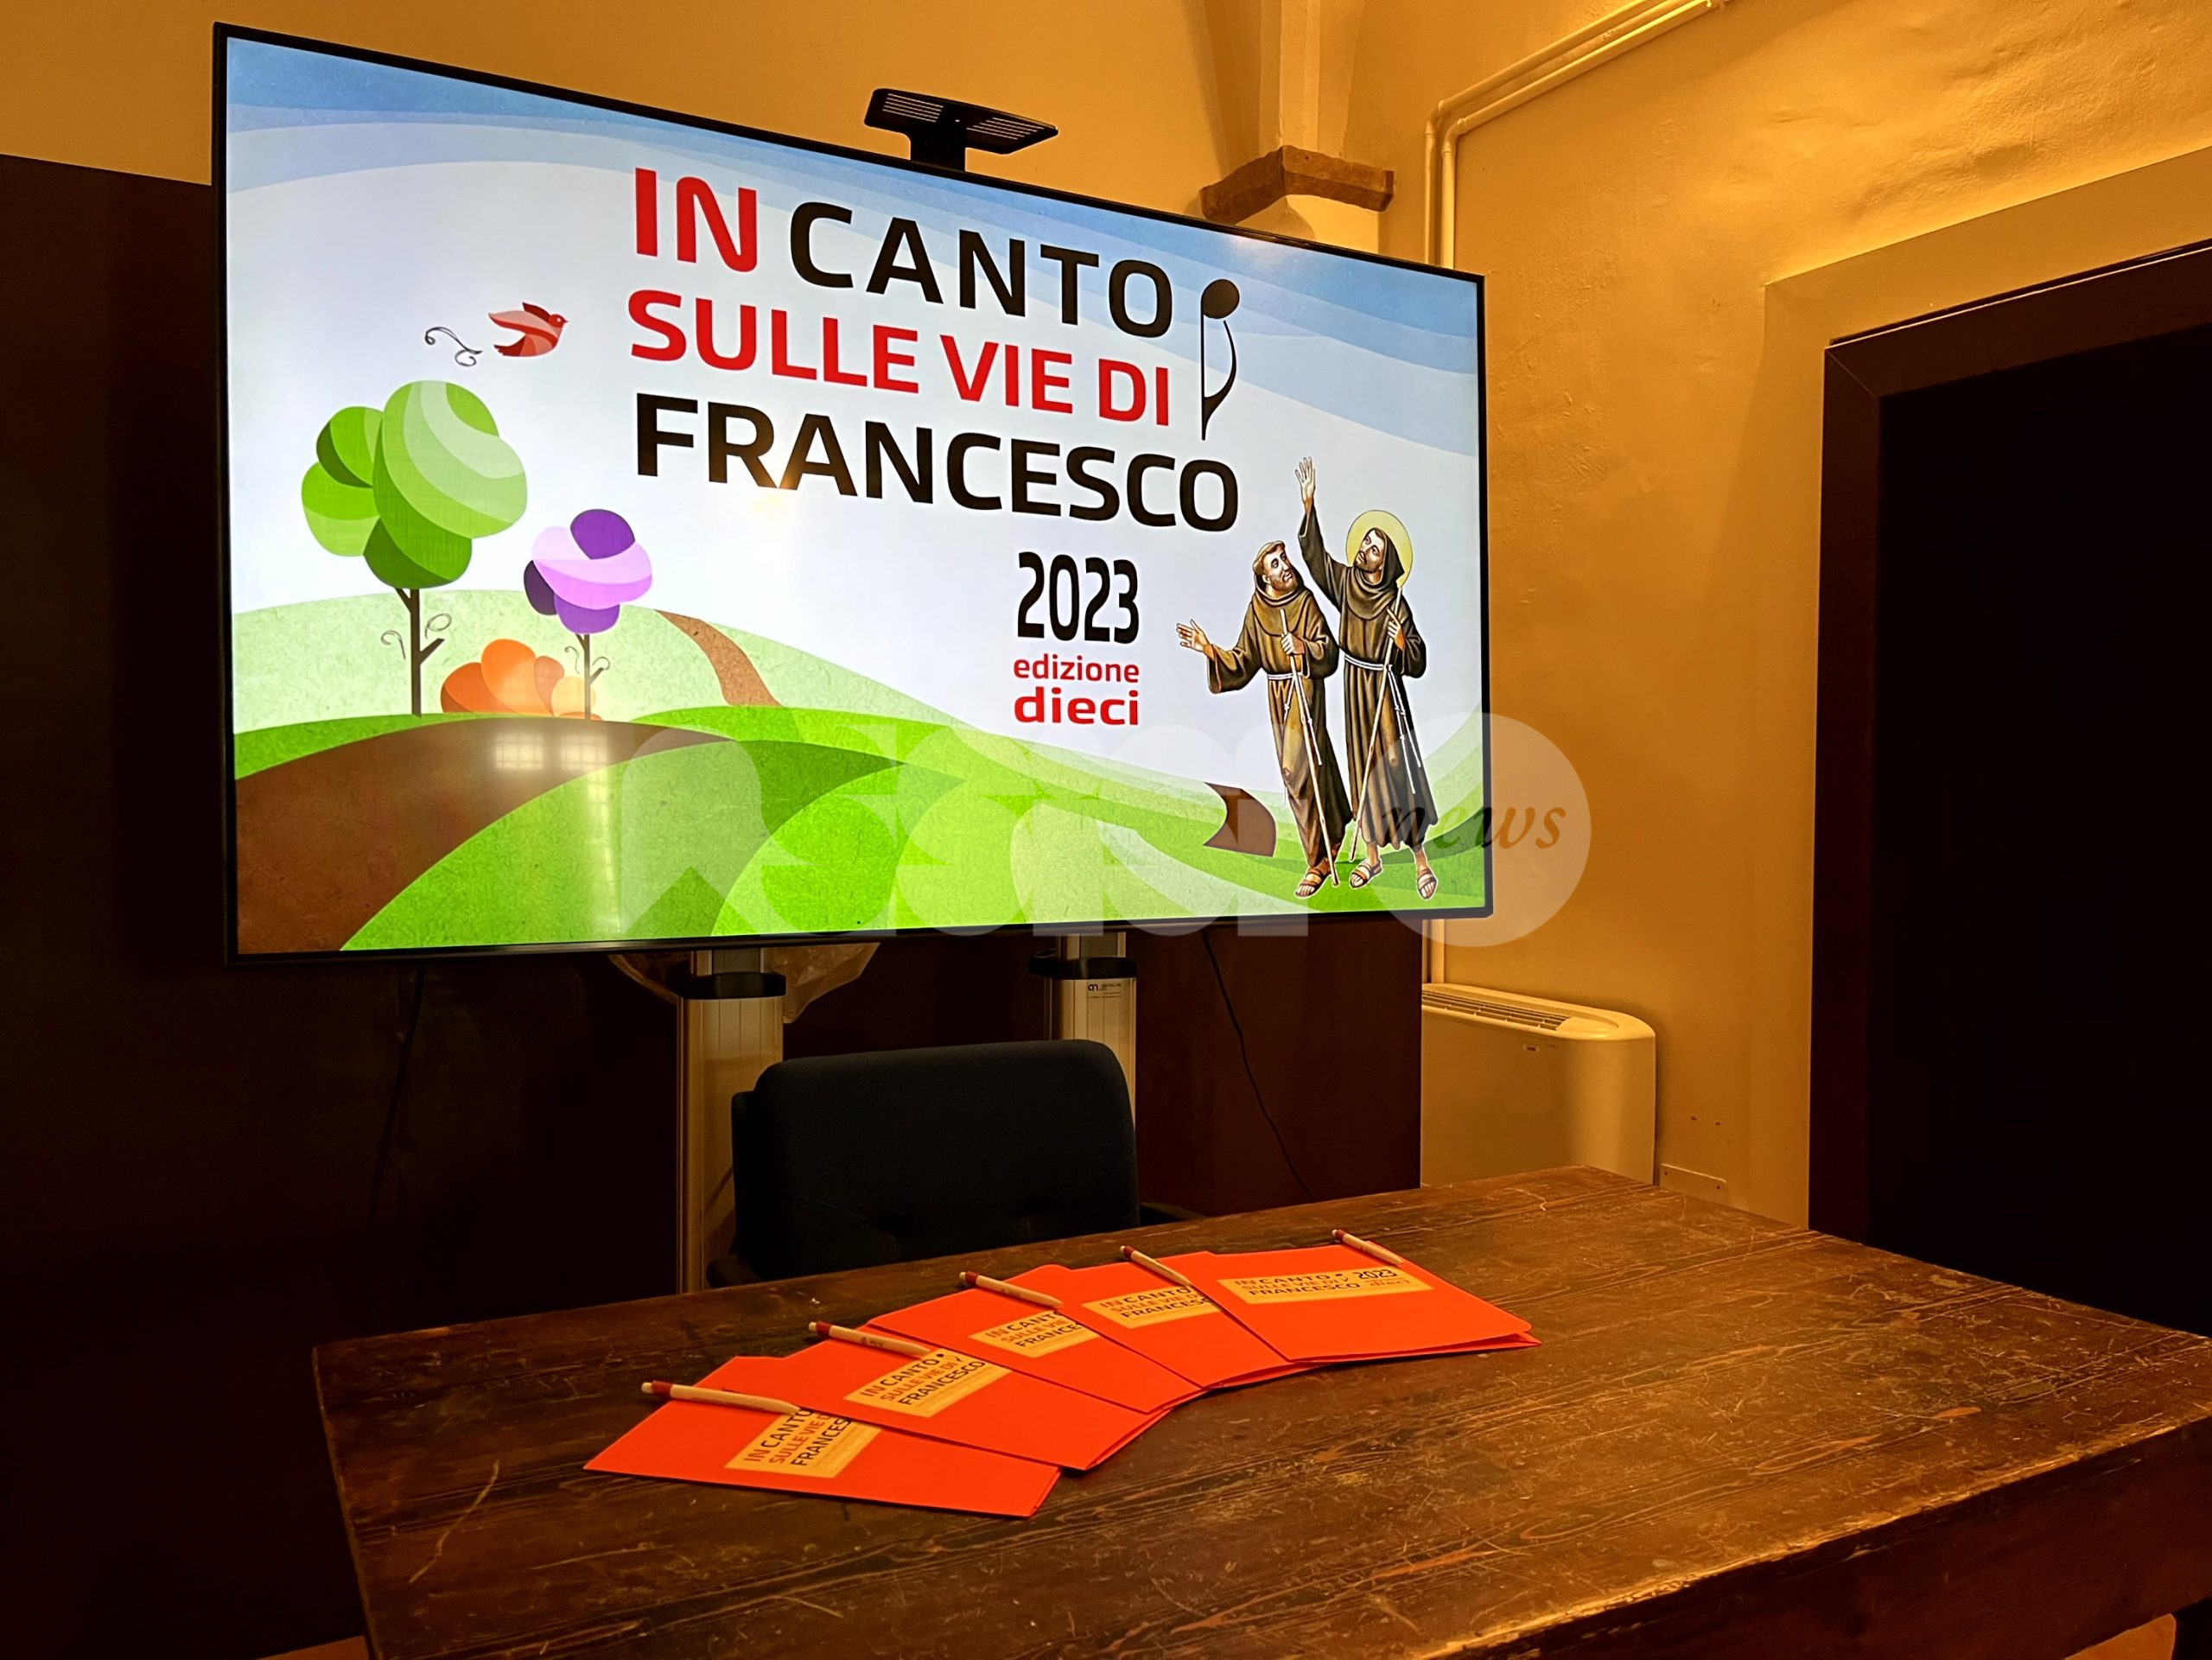 InCanto 2023 sulle Vie di Francesco: undici eventi tra Umbria, Toscana e Marche: il programma